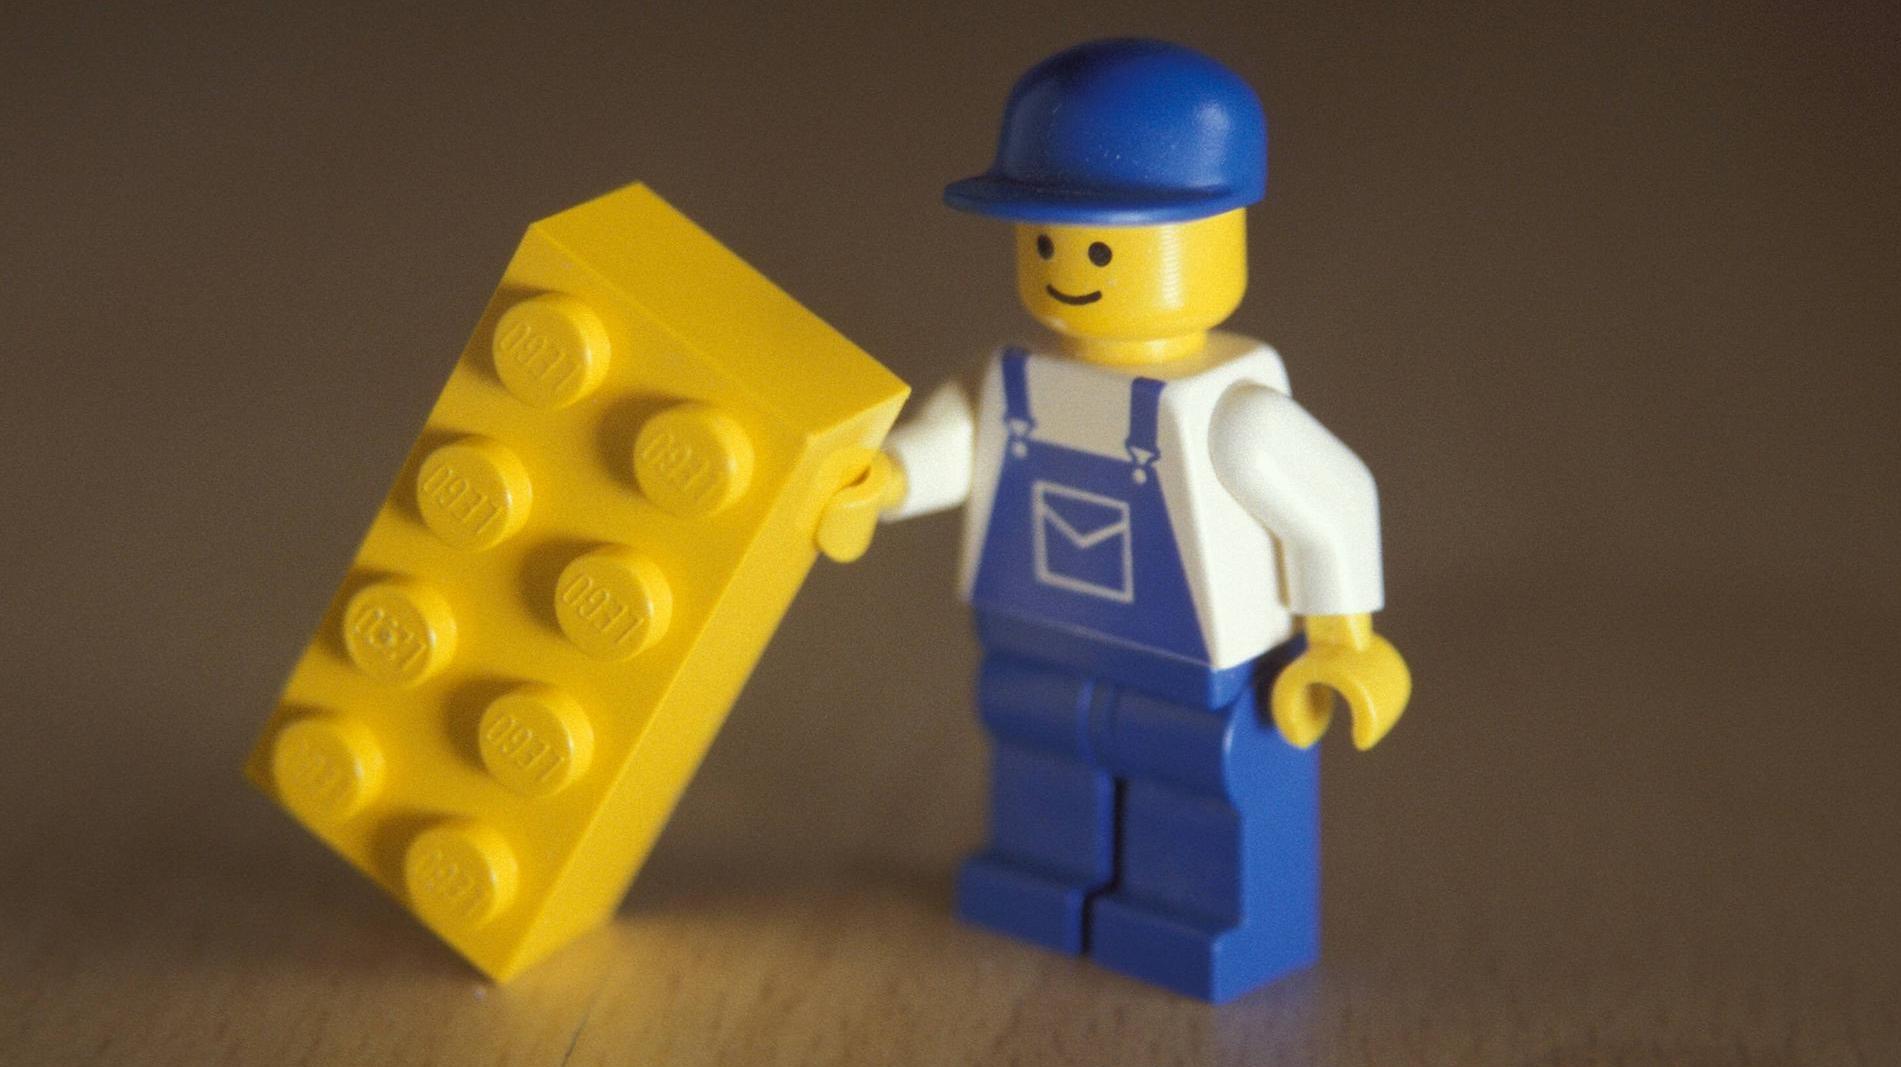 Creador del muñeco de Lego murió a los 78 años